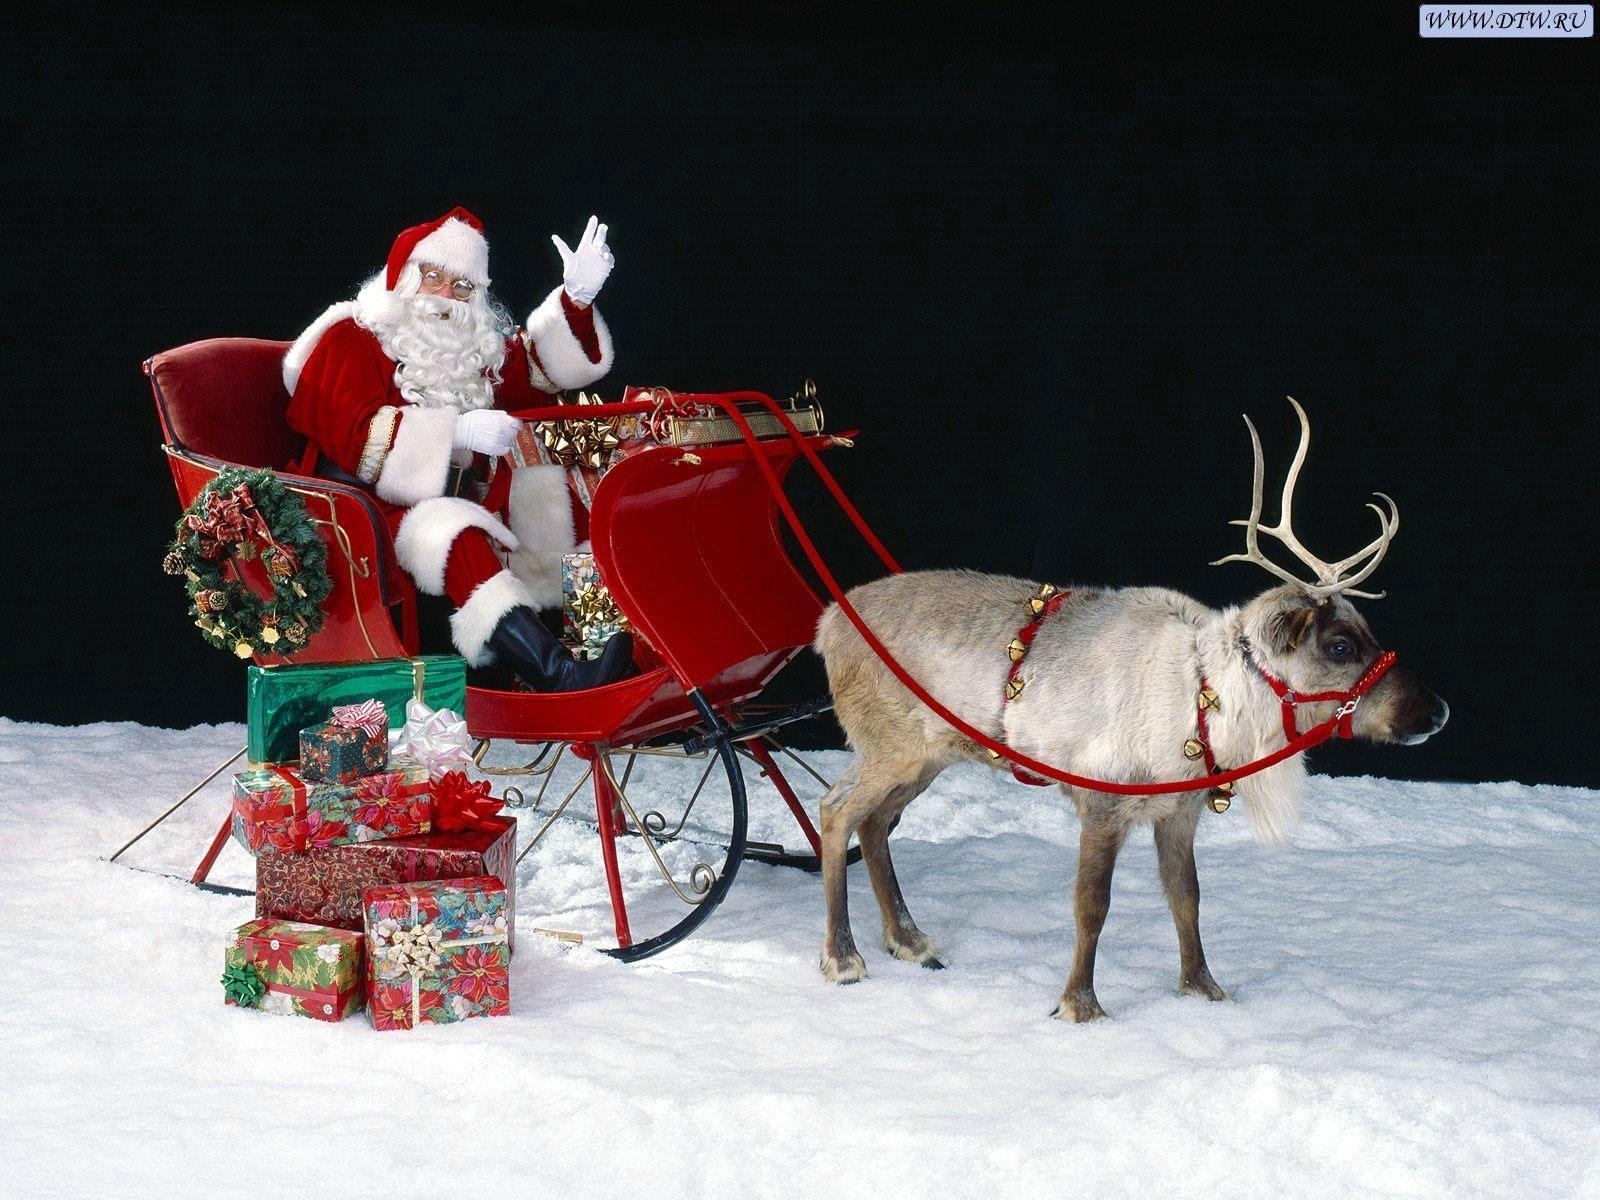 2211 скачать картинку новый год (new year), рождество (christmas xmas), дед мороз, санта клаус (santa claus), праздники - обои и заставки бесплатно